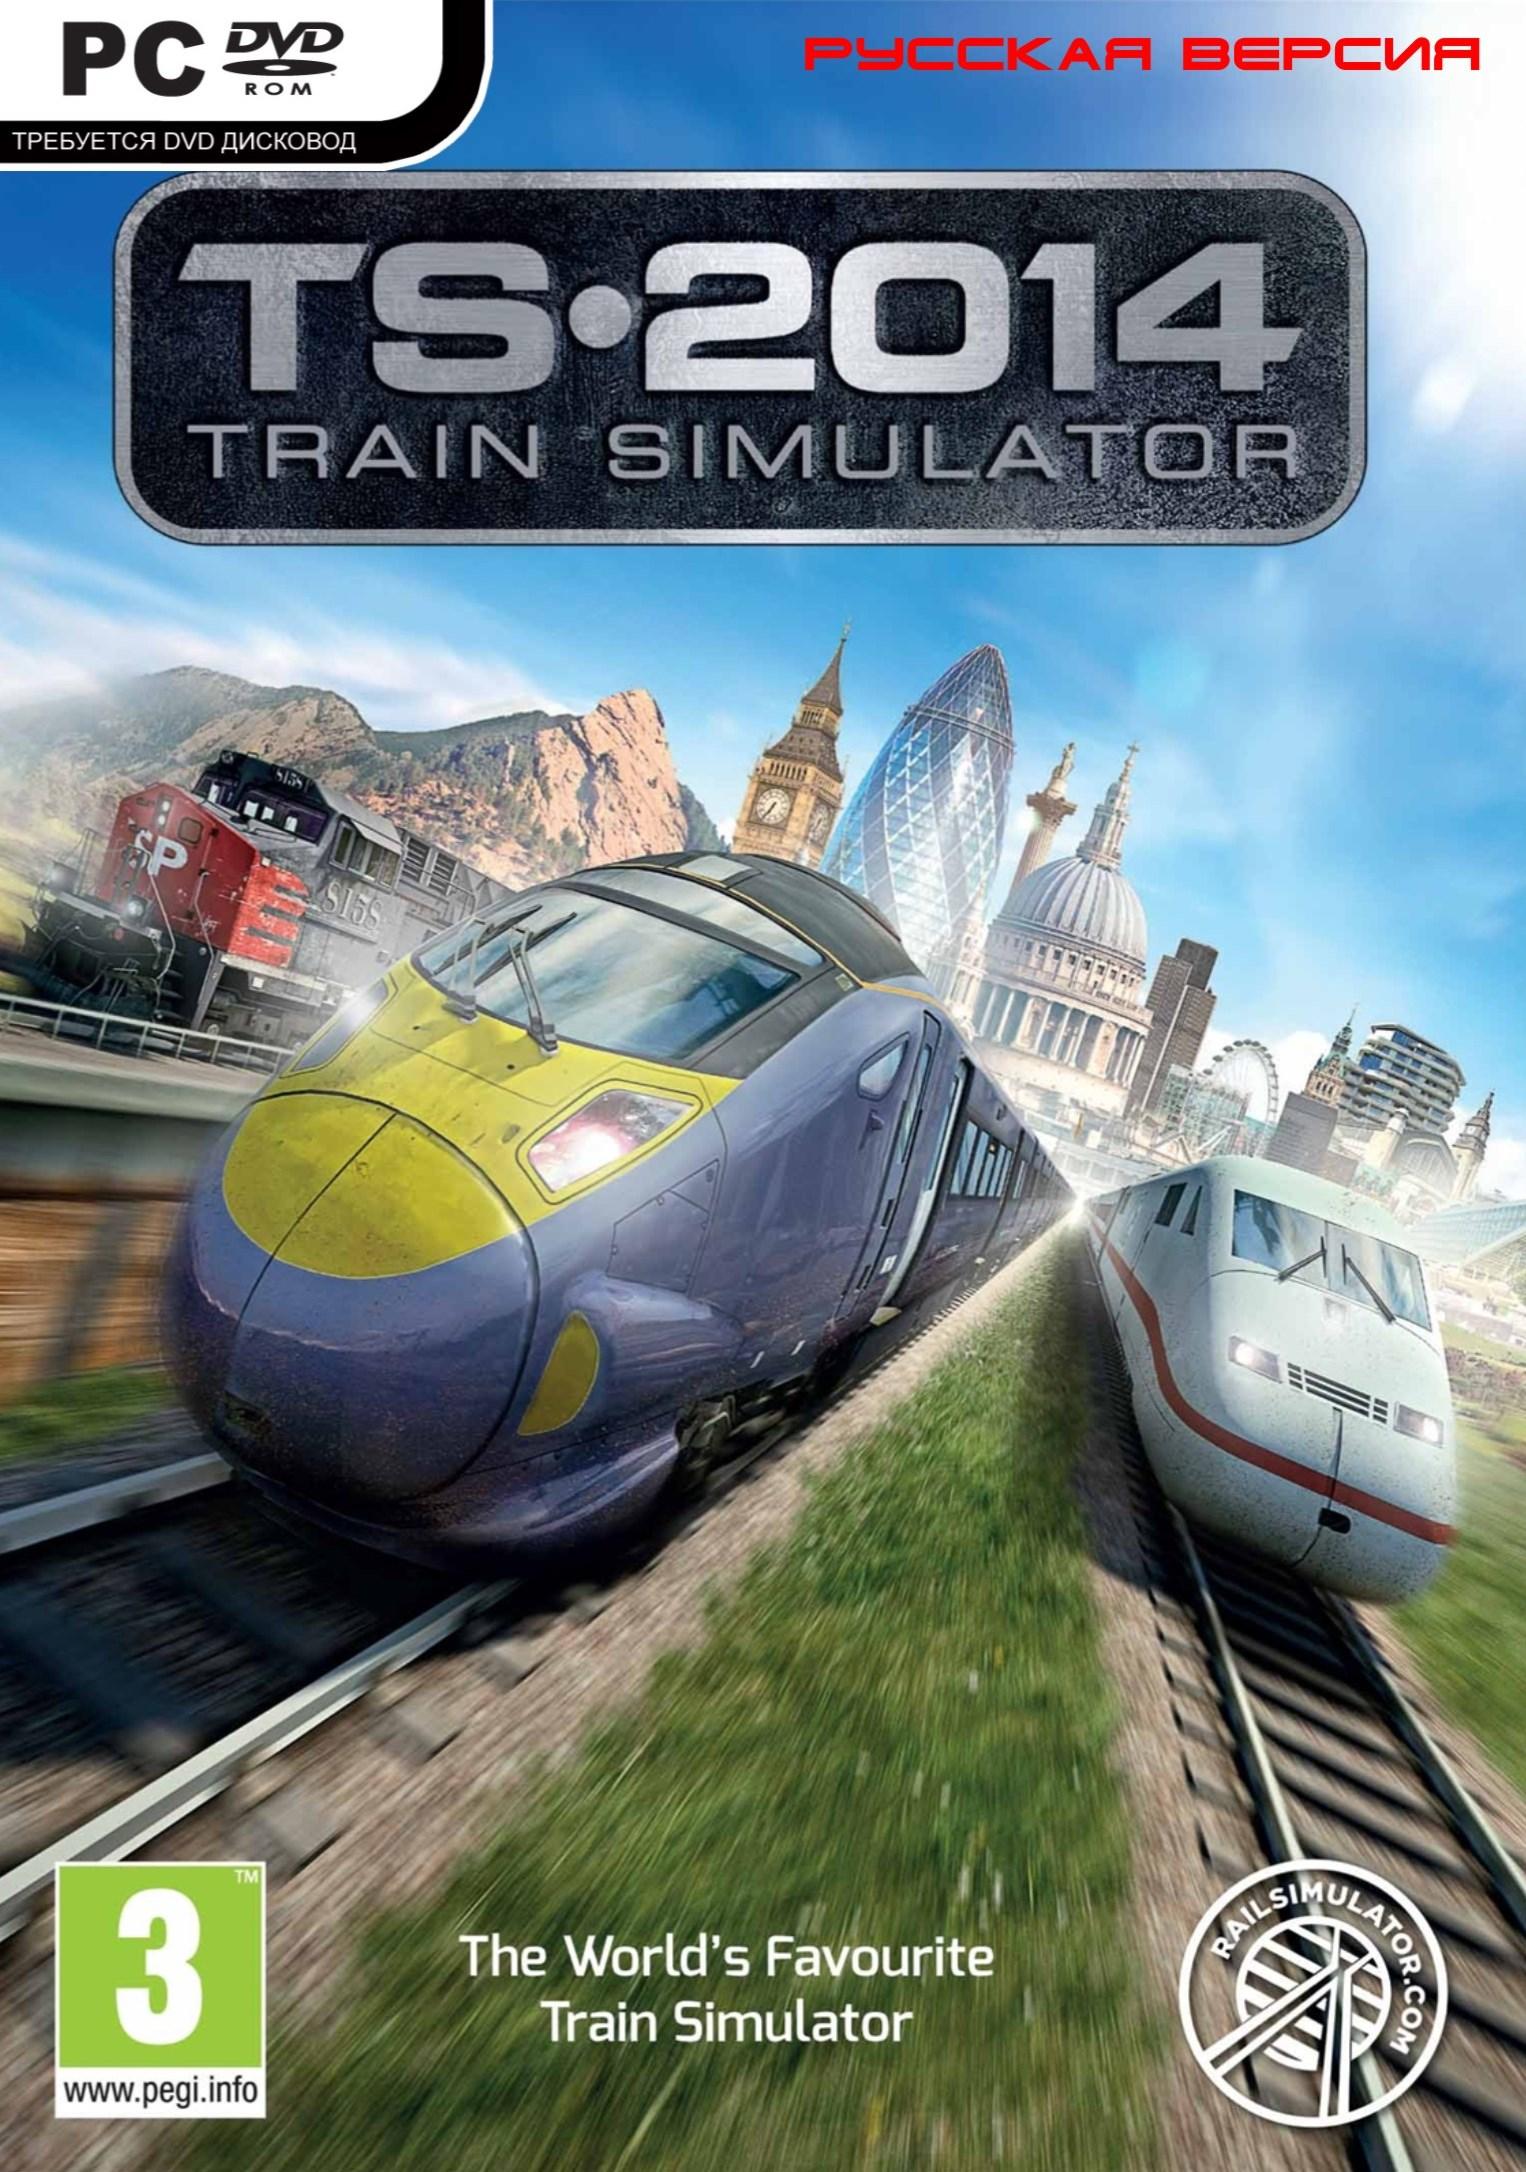 Train game simulator